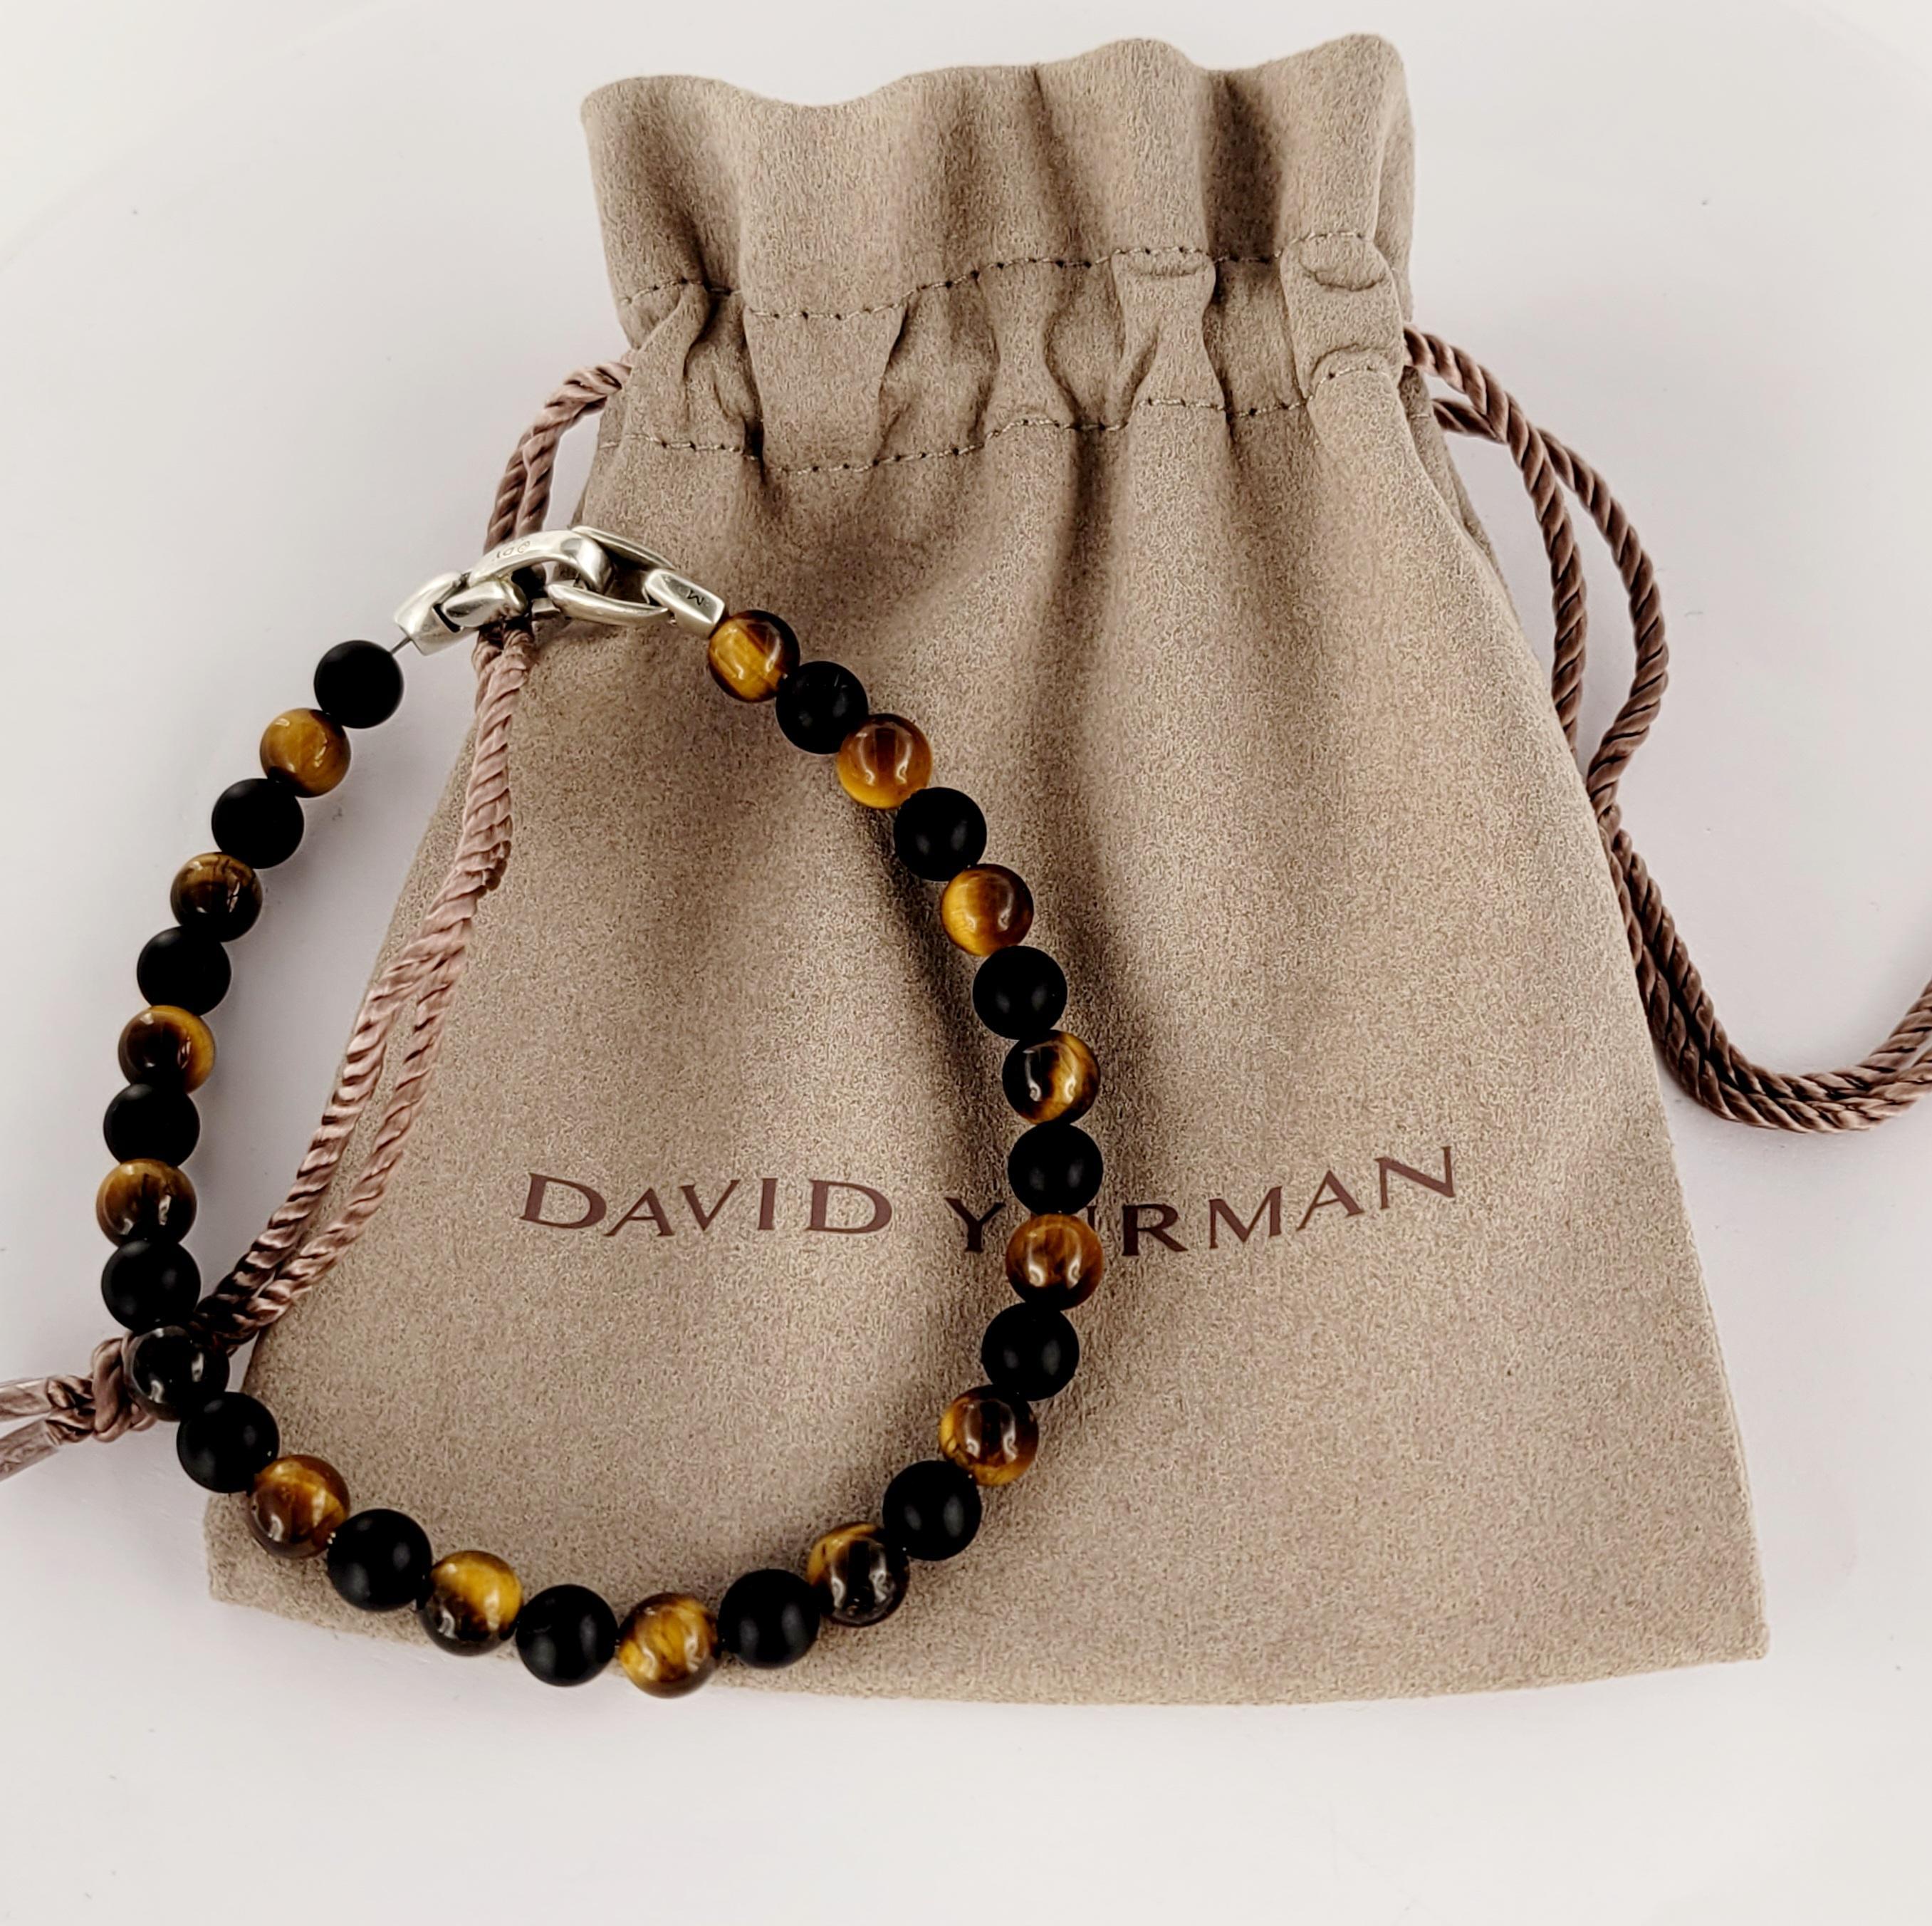 Bracelet de perles spirituelles pour hommes David Yurman
Style noir et œil de tigre 
Matériau Argent Sterling
Pureté du métal 925
Largeur du bracelet 6,5 mm
Longueur du bracelet 8.5'' d'un bout à l'autre
Poids du bracelet 13.2gr
Genre hommes
Condit